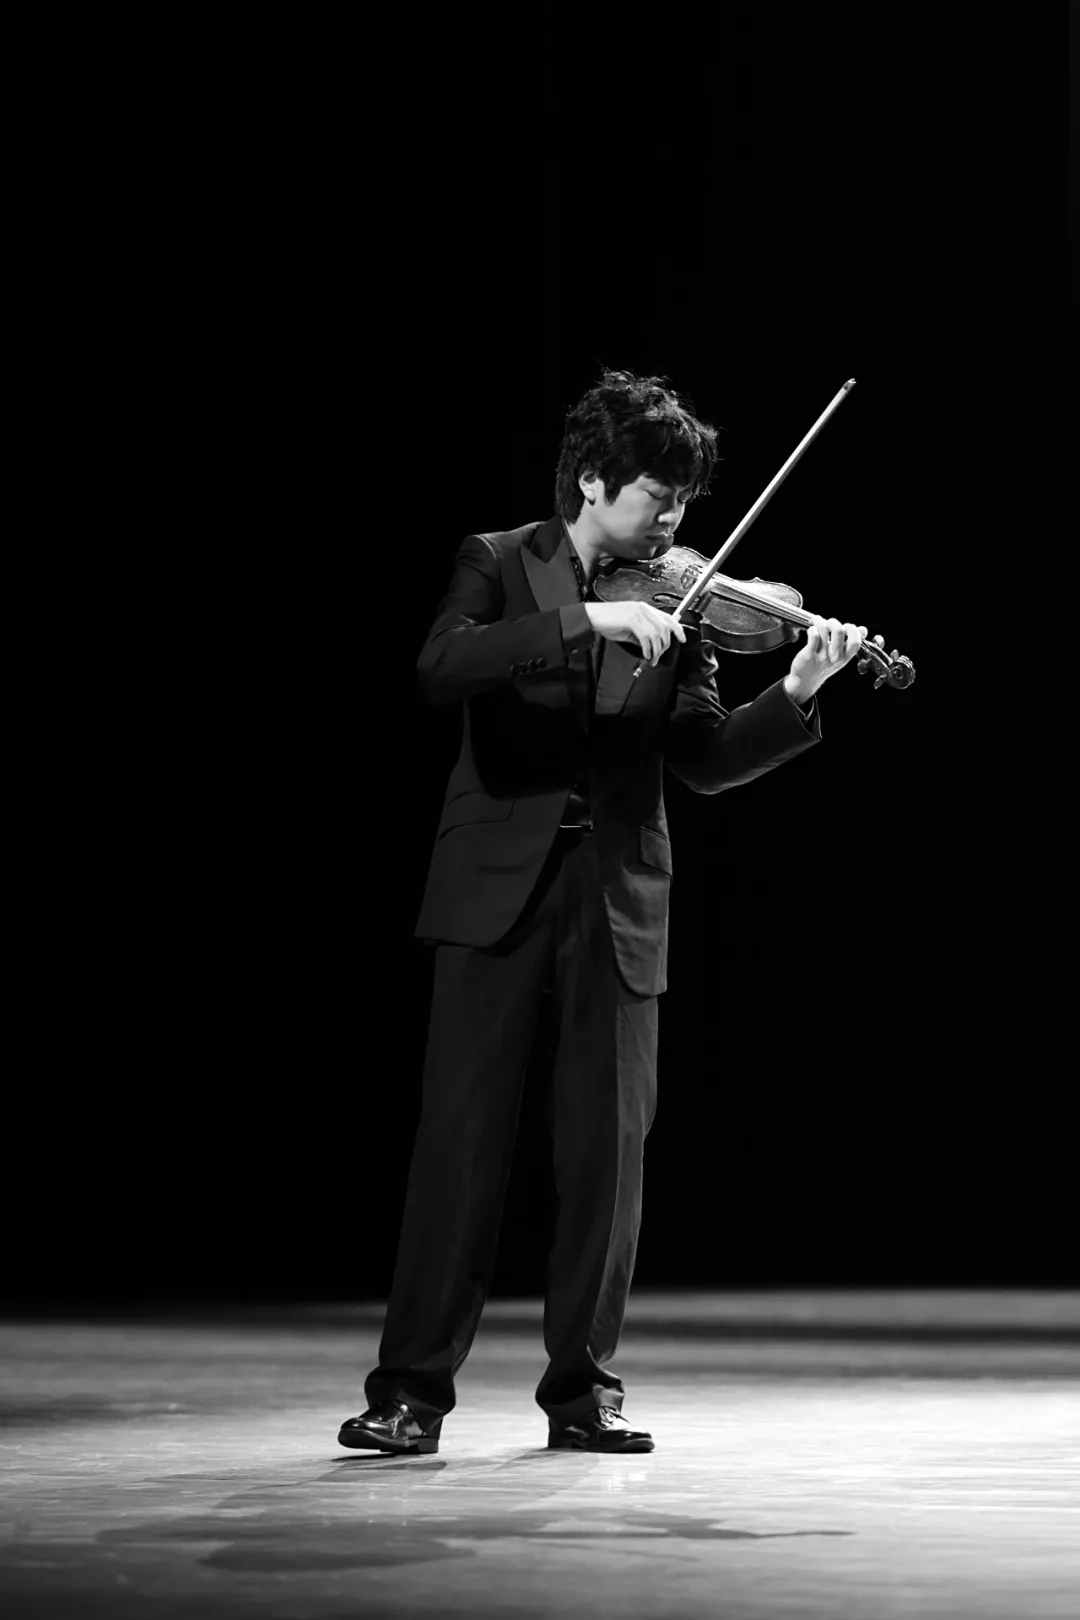 张可函与拉米·曼哈纳 小提琴与钢琴音乐会 重庆站